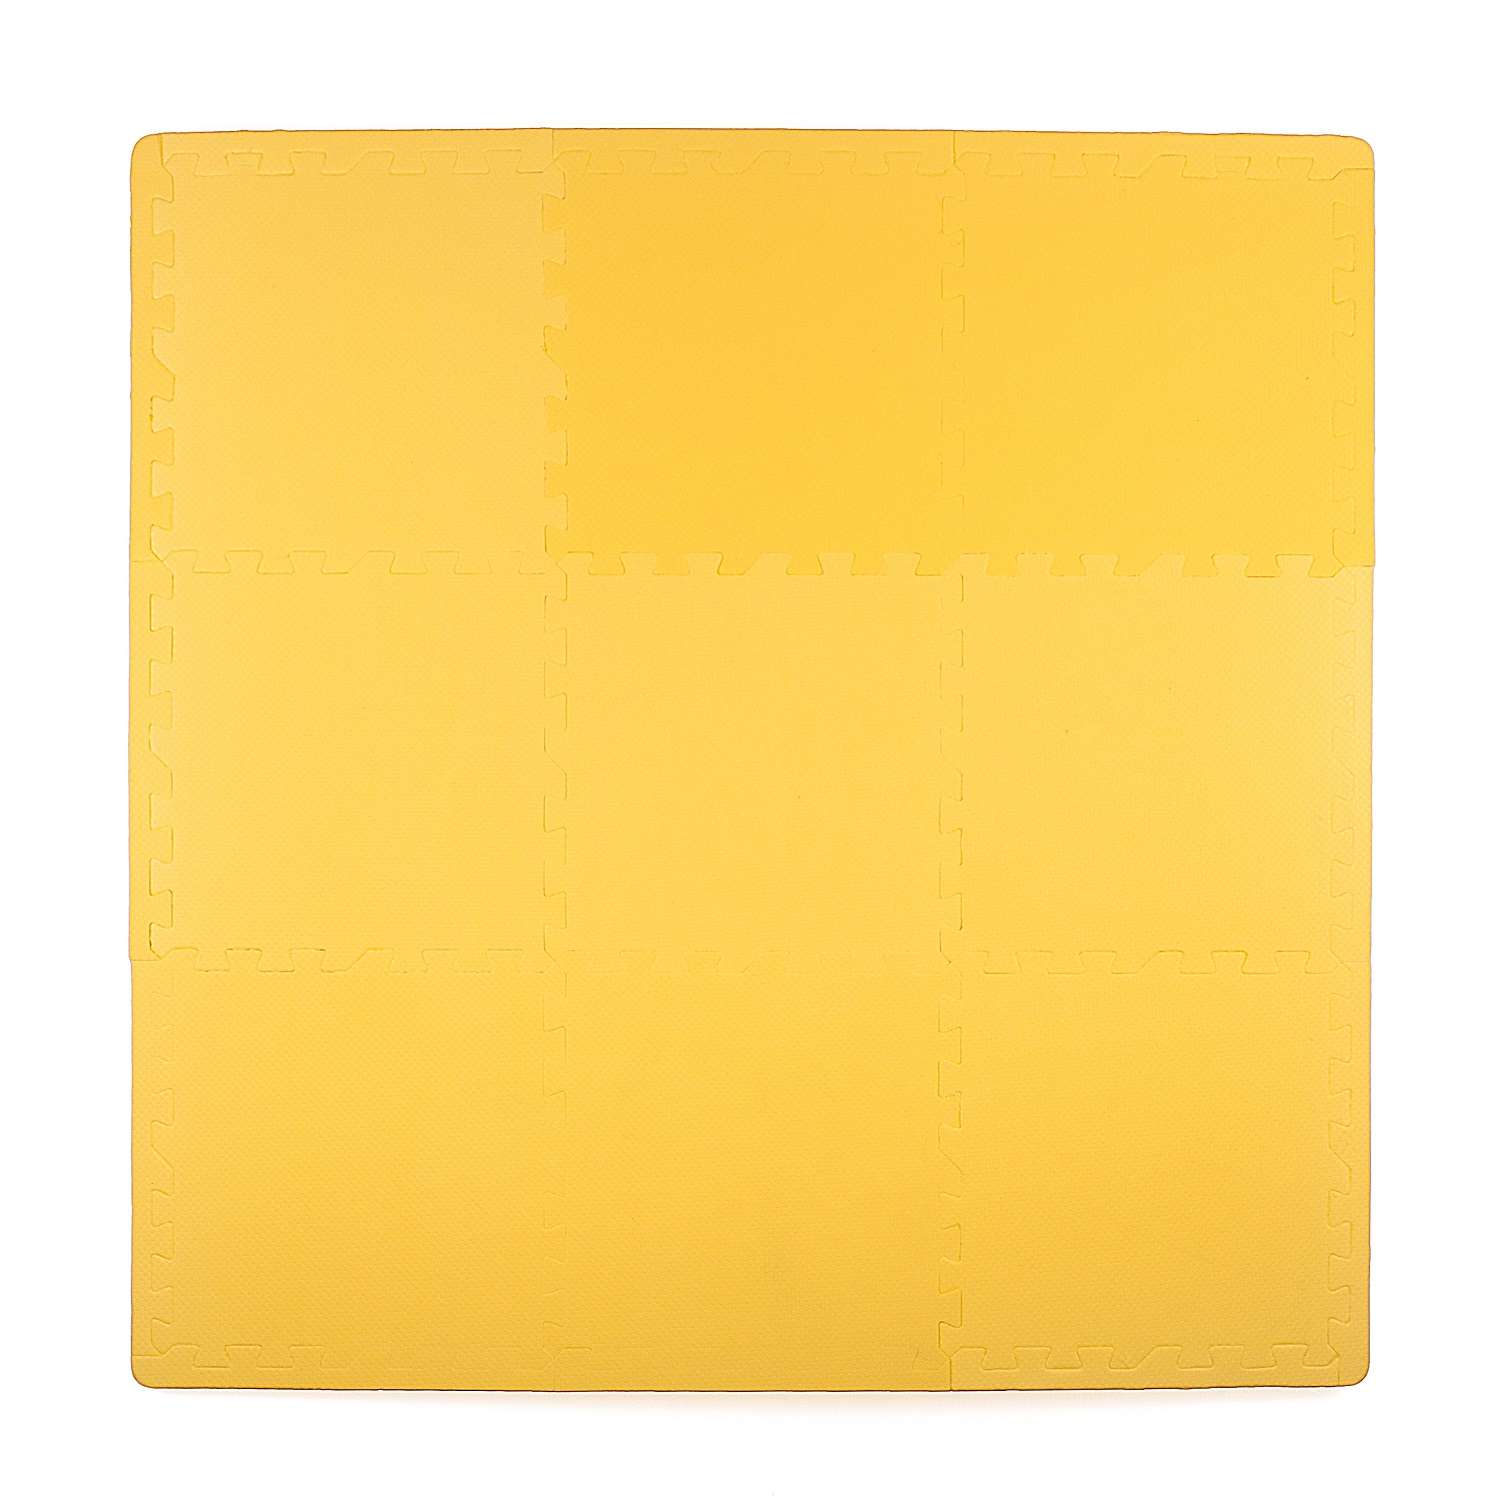 Развивающий детский коврик Eco cover игровой мягкий пол для ползания желтый 30х30 - фото 2